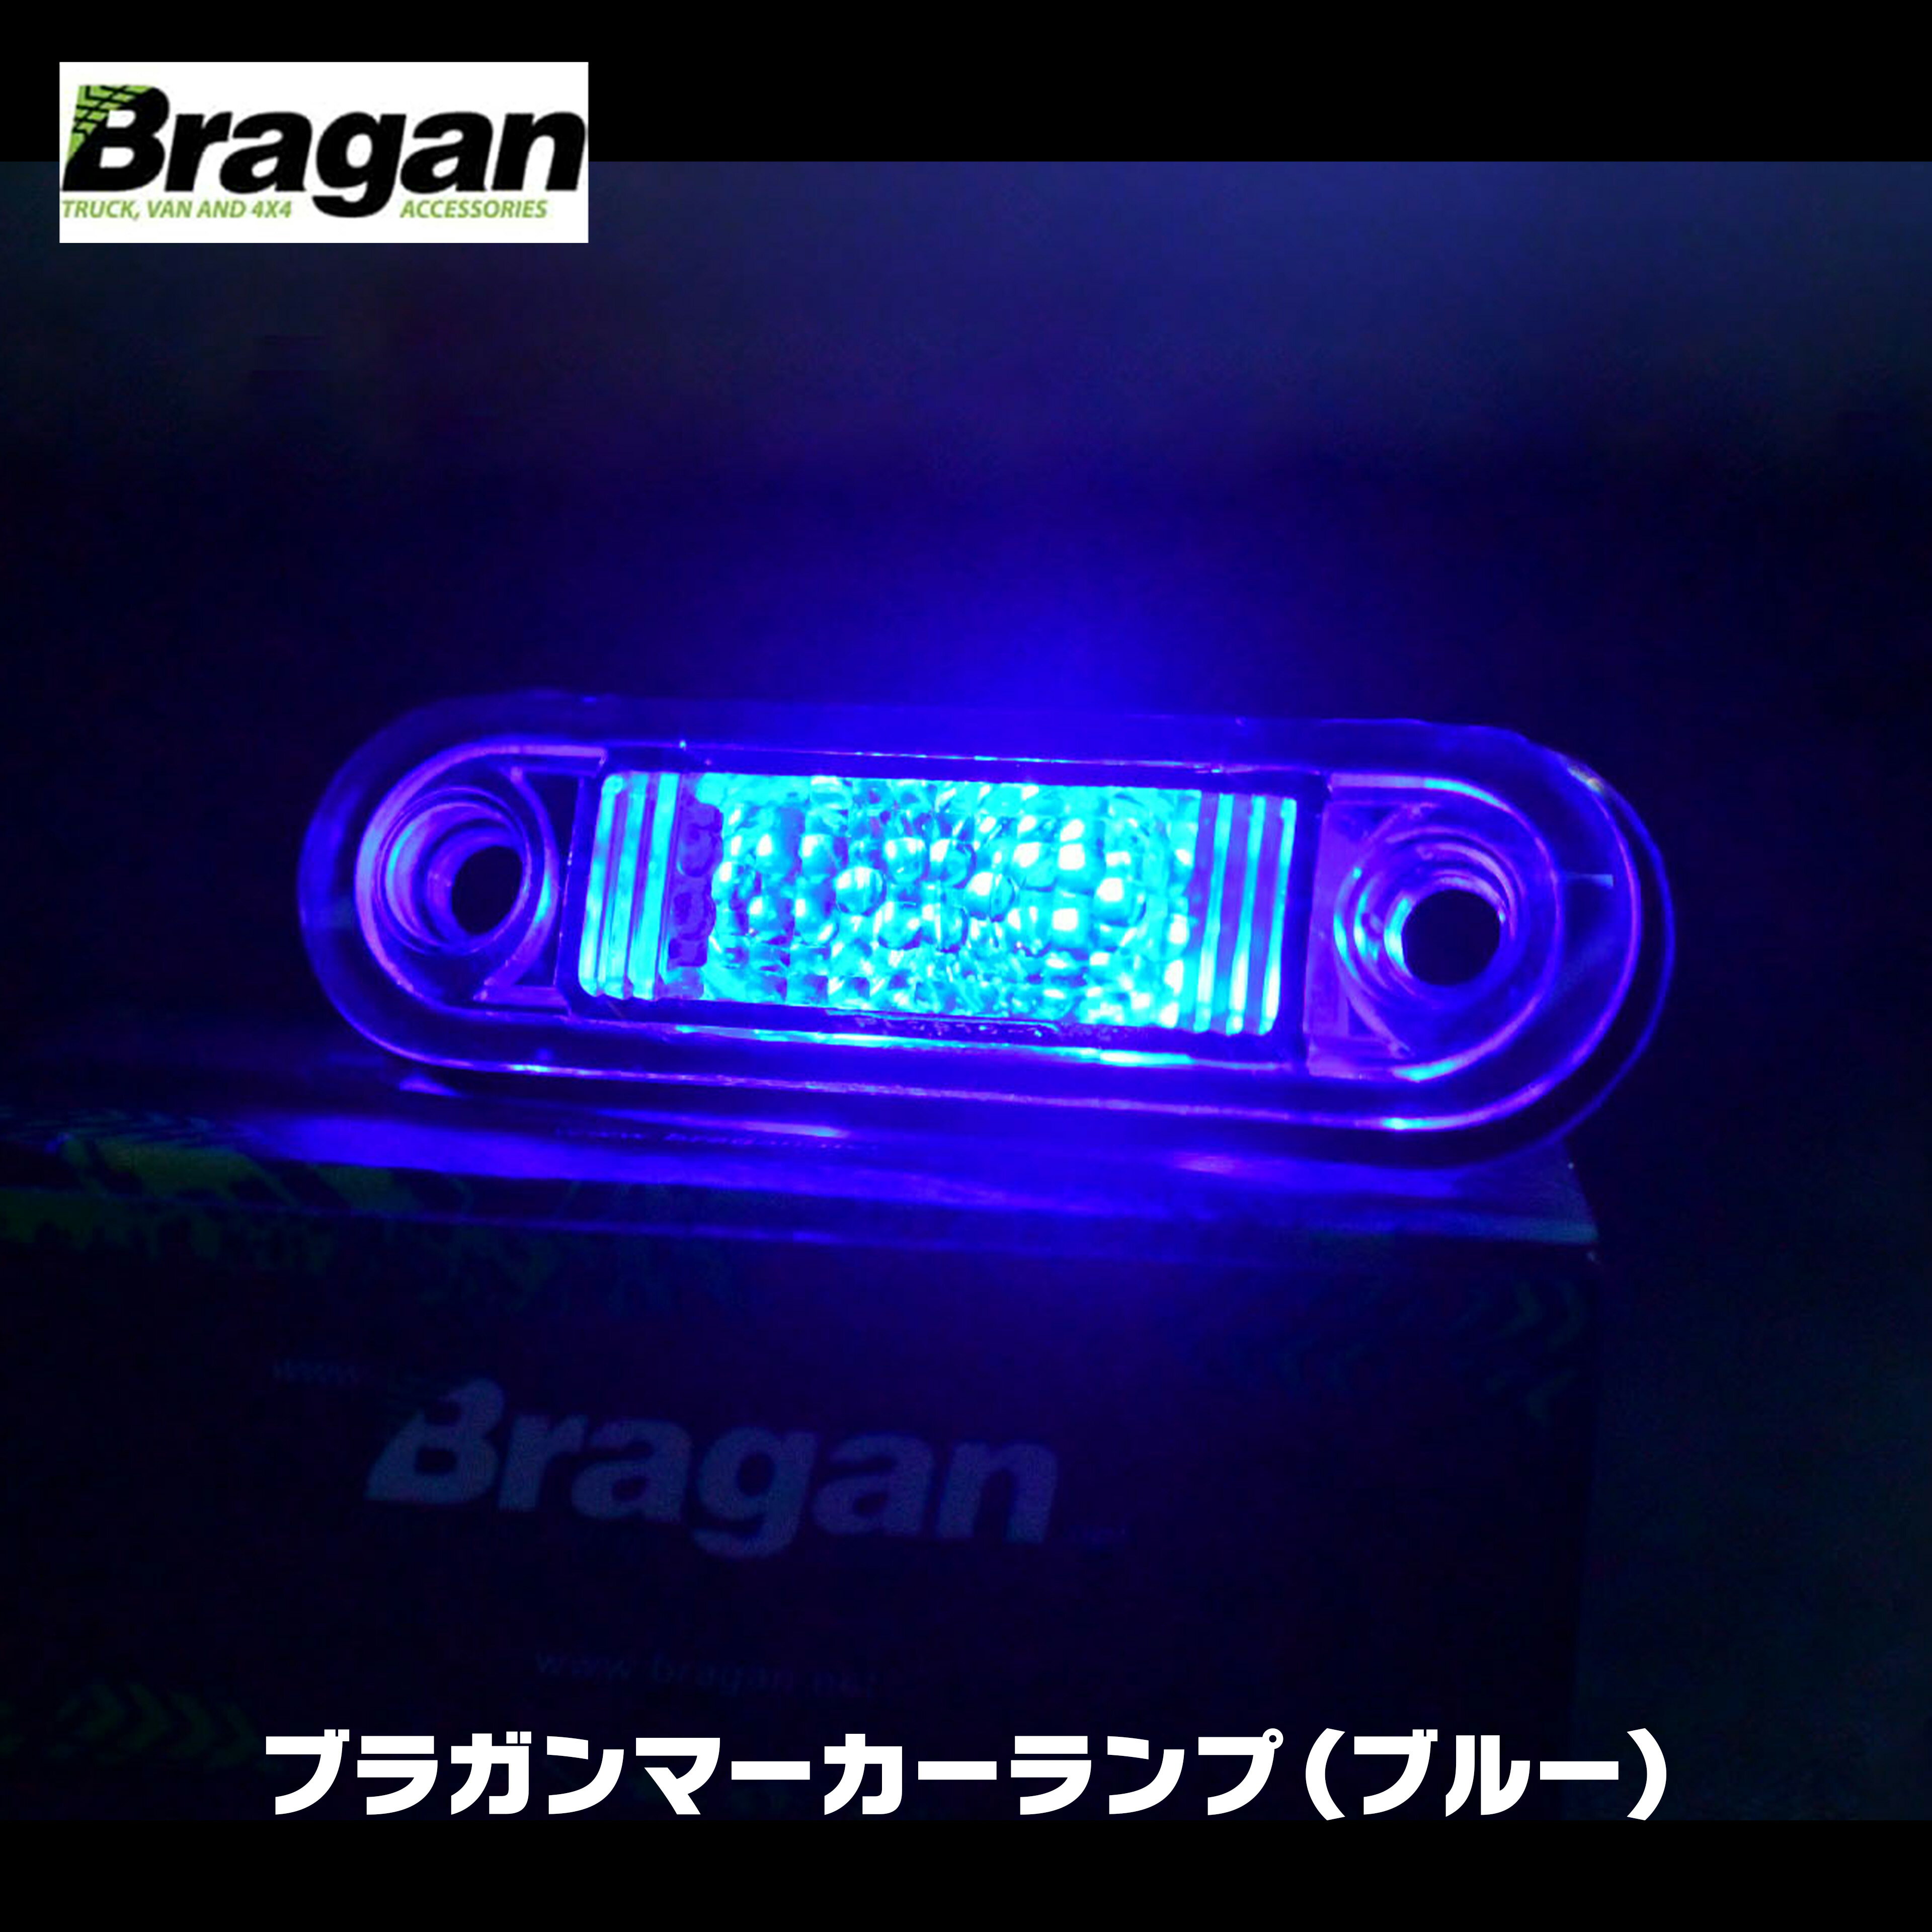 【送料無料】Bragan ブラガン LED マーカー ランプ サイド ブルー 青 24V ユーロ カスタム ボルボ スカニア scania volvo fh